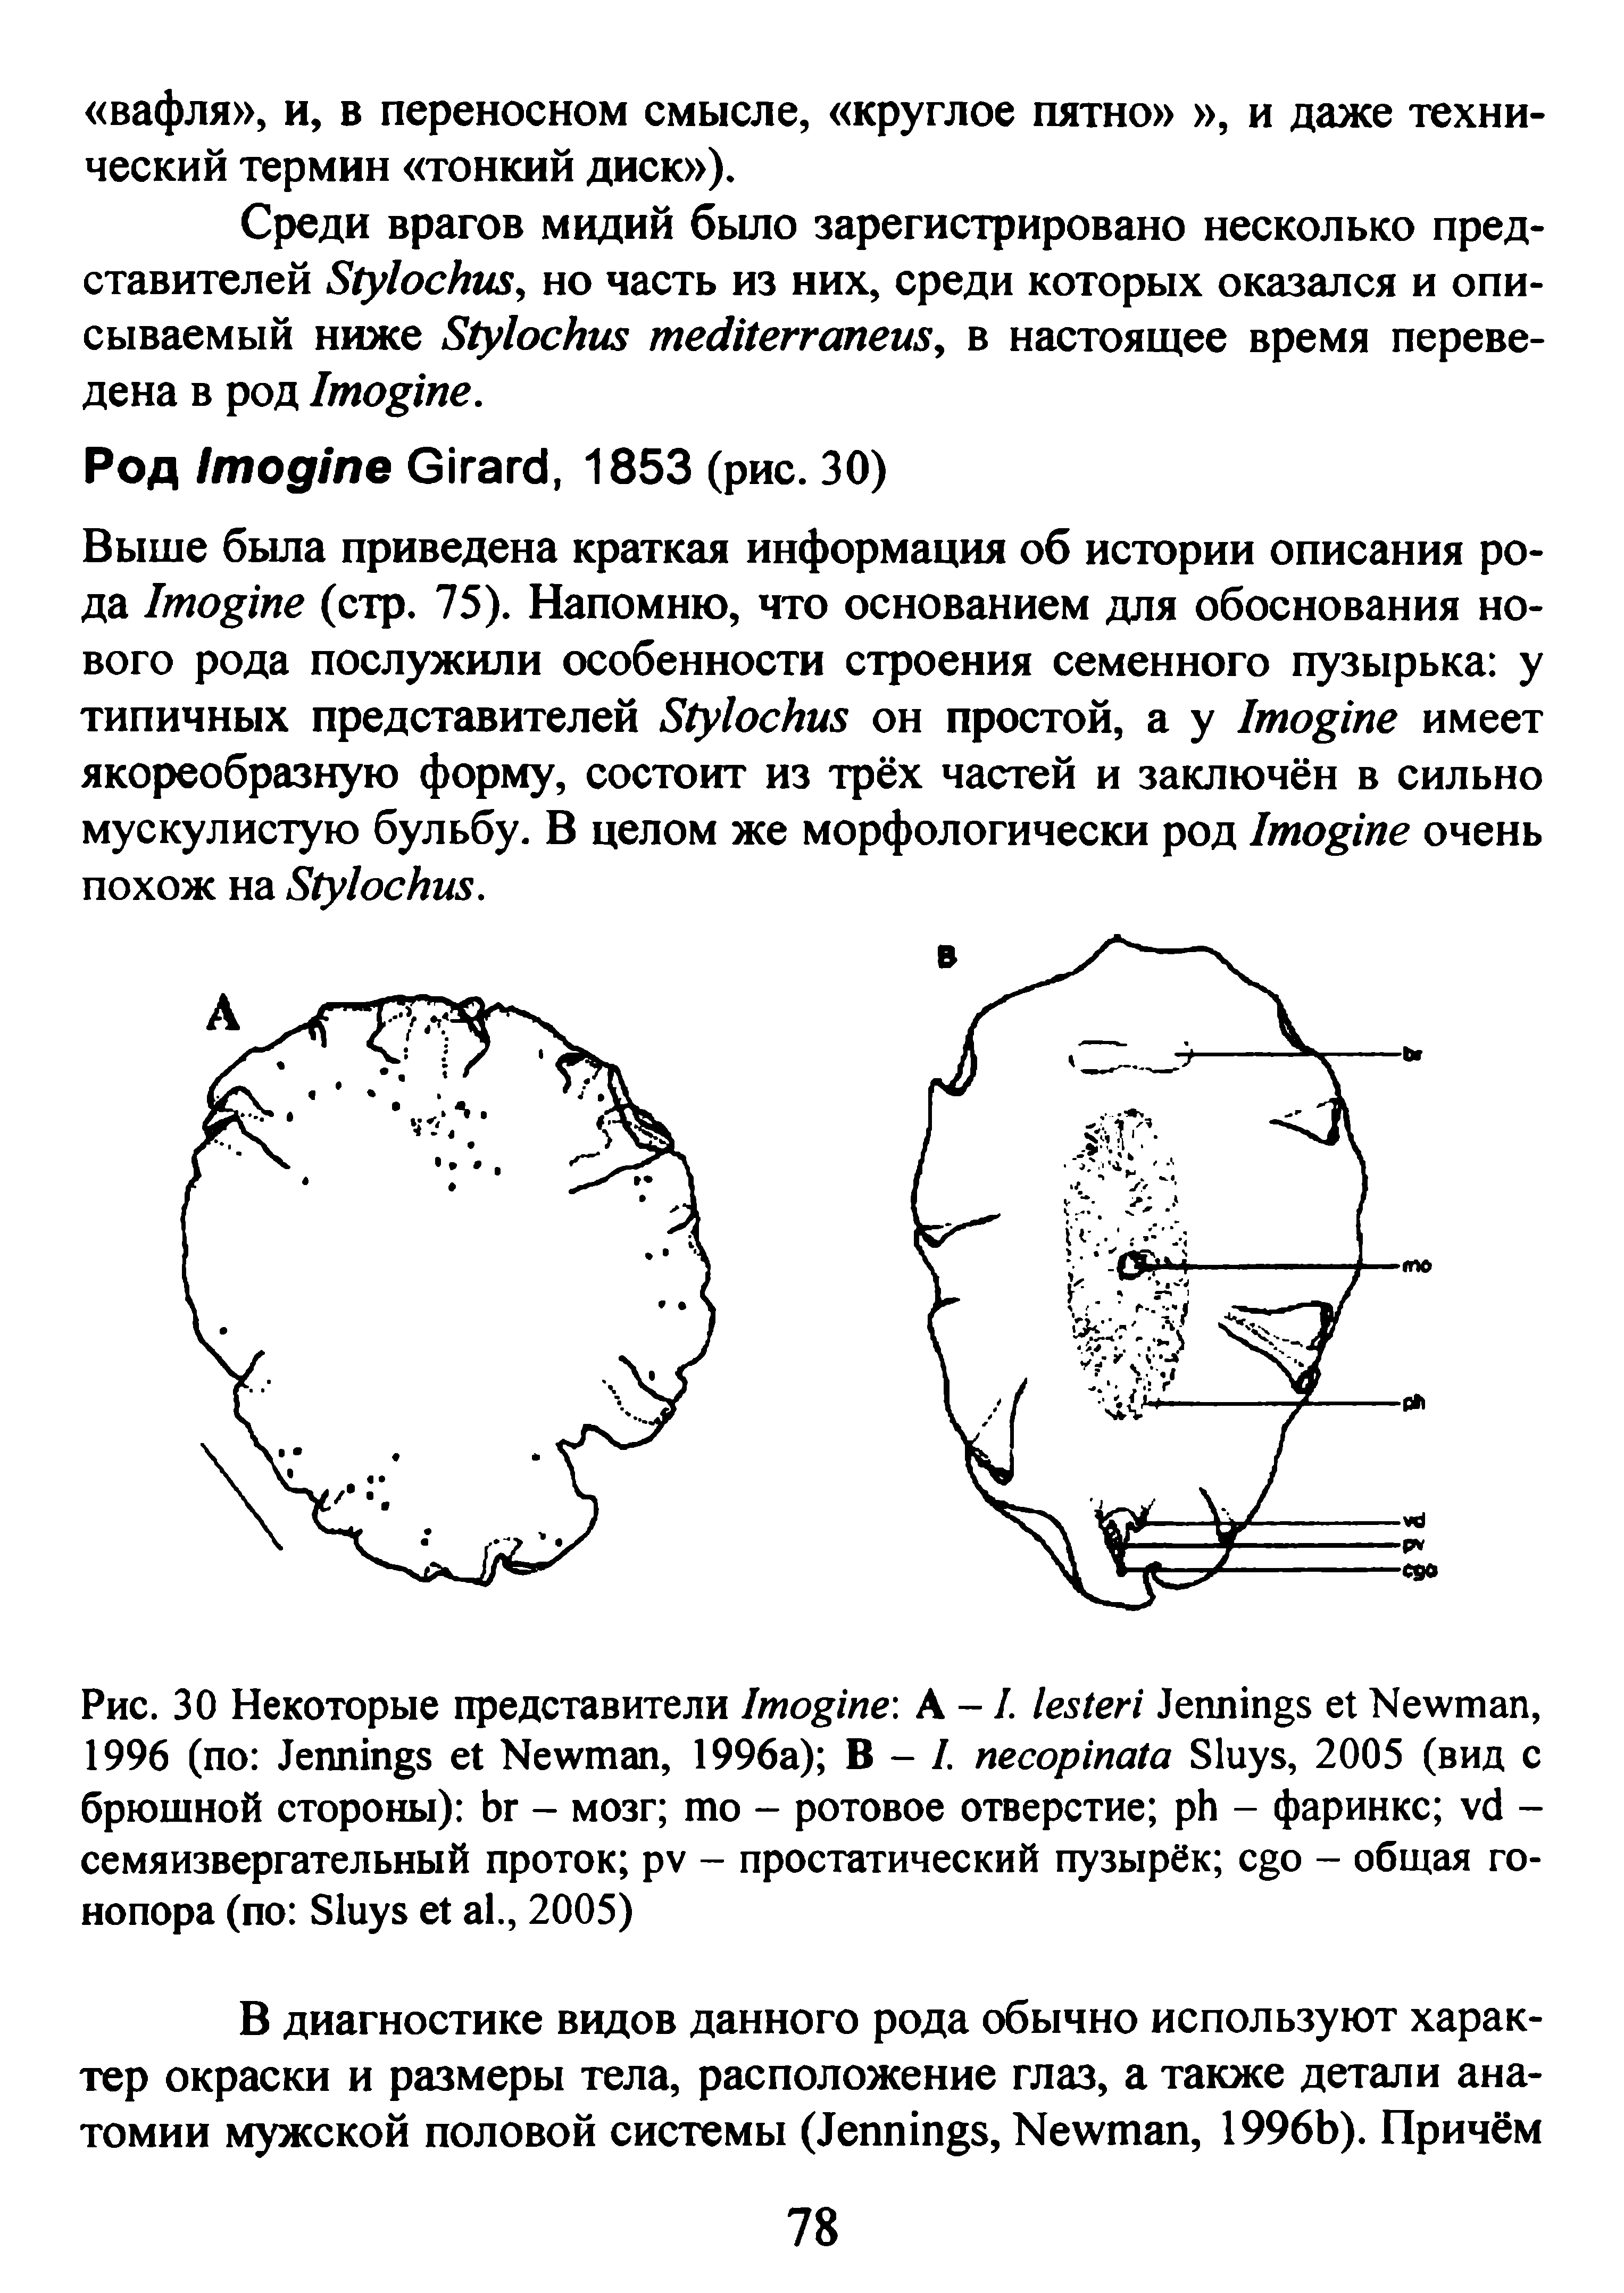 Рис. 30 Некоторые представители I А -1. J N , 1996 ( J N , 1996 ) В - I. S , 2005 (вид брюшной стороны) - мозг - ротовое отверстие - фаринкс -семяизвергательный проток - простатический пузырёк - общая го-нопора (по S ., 2005)...